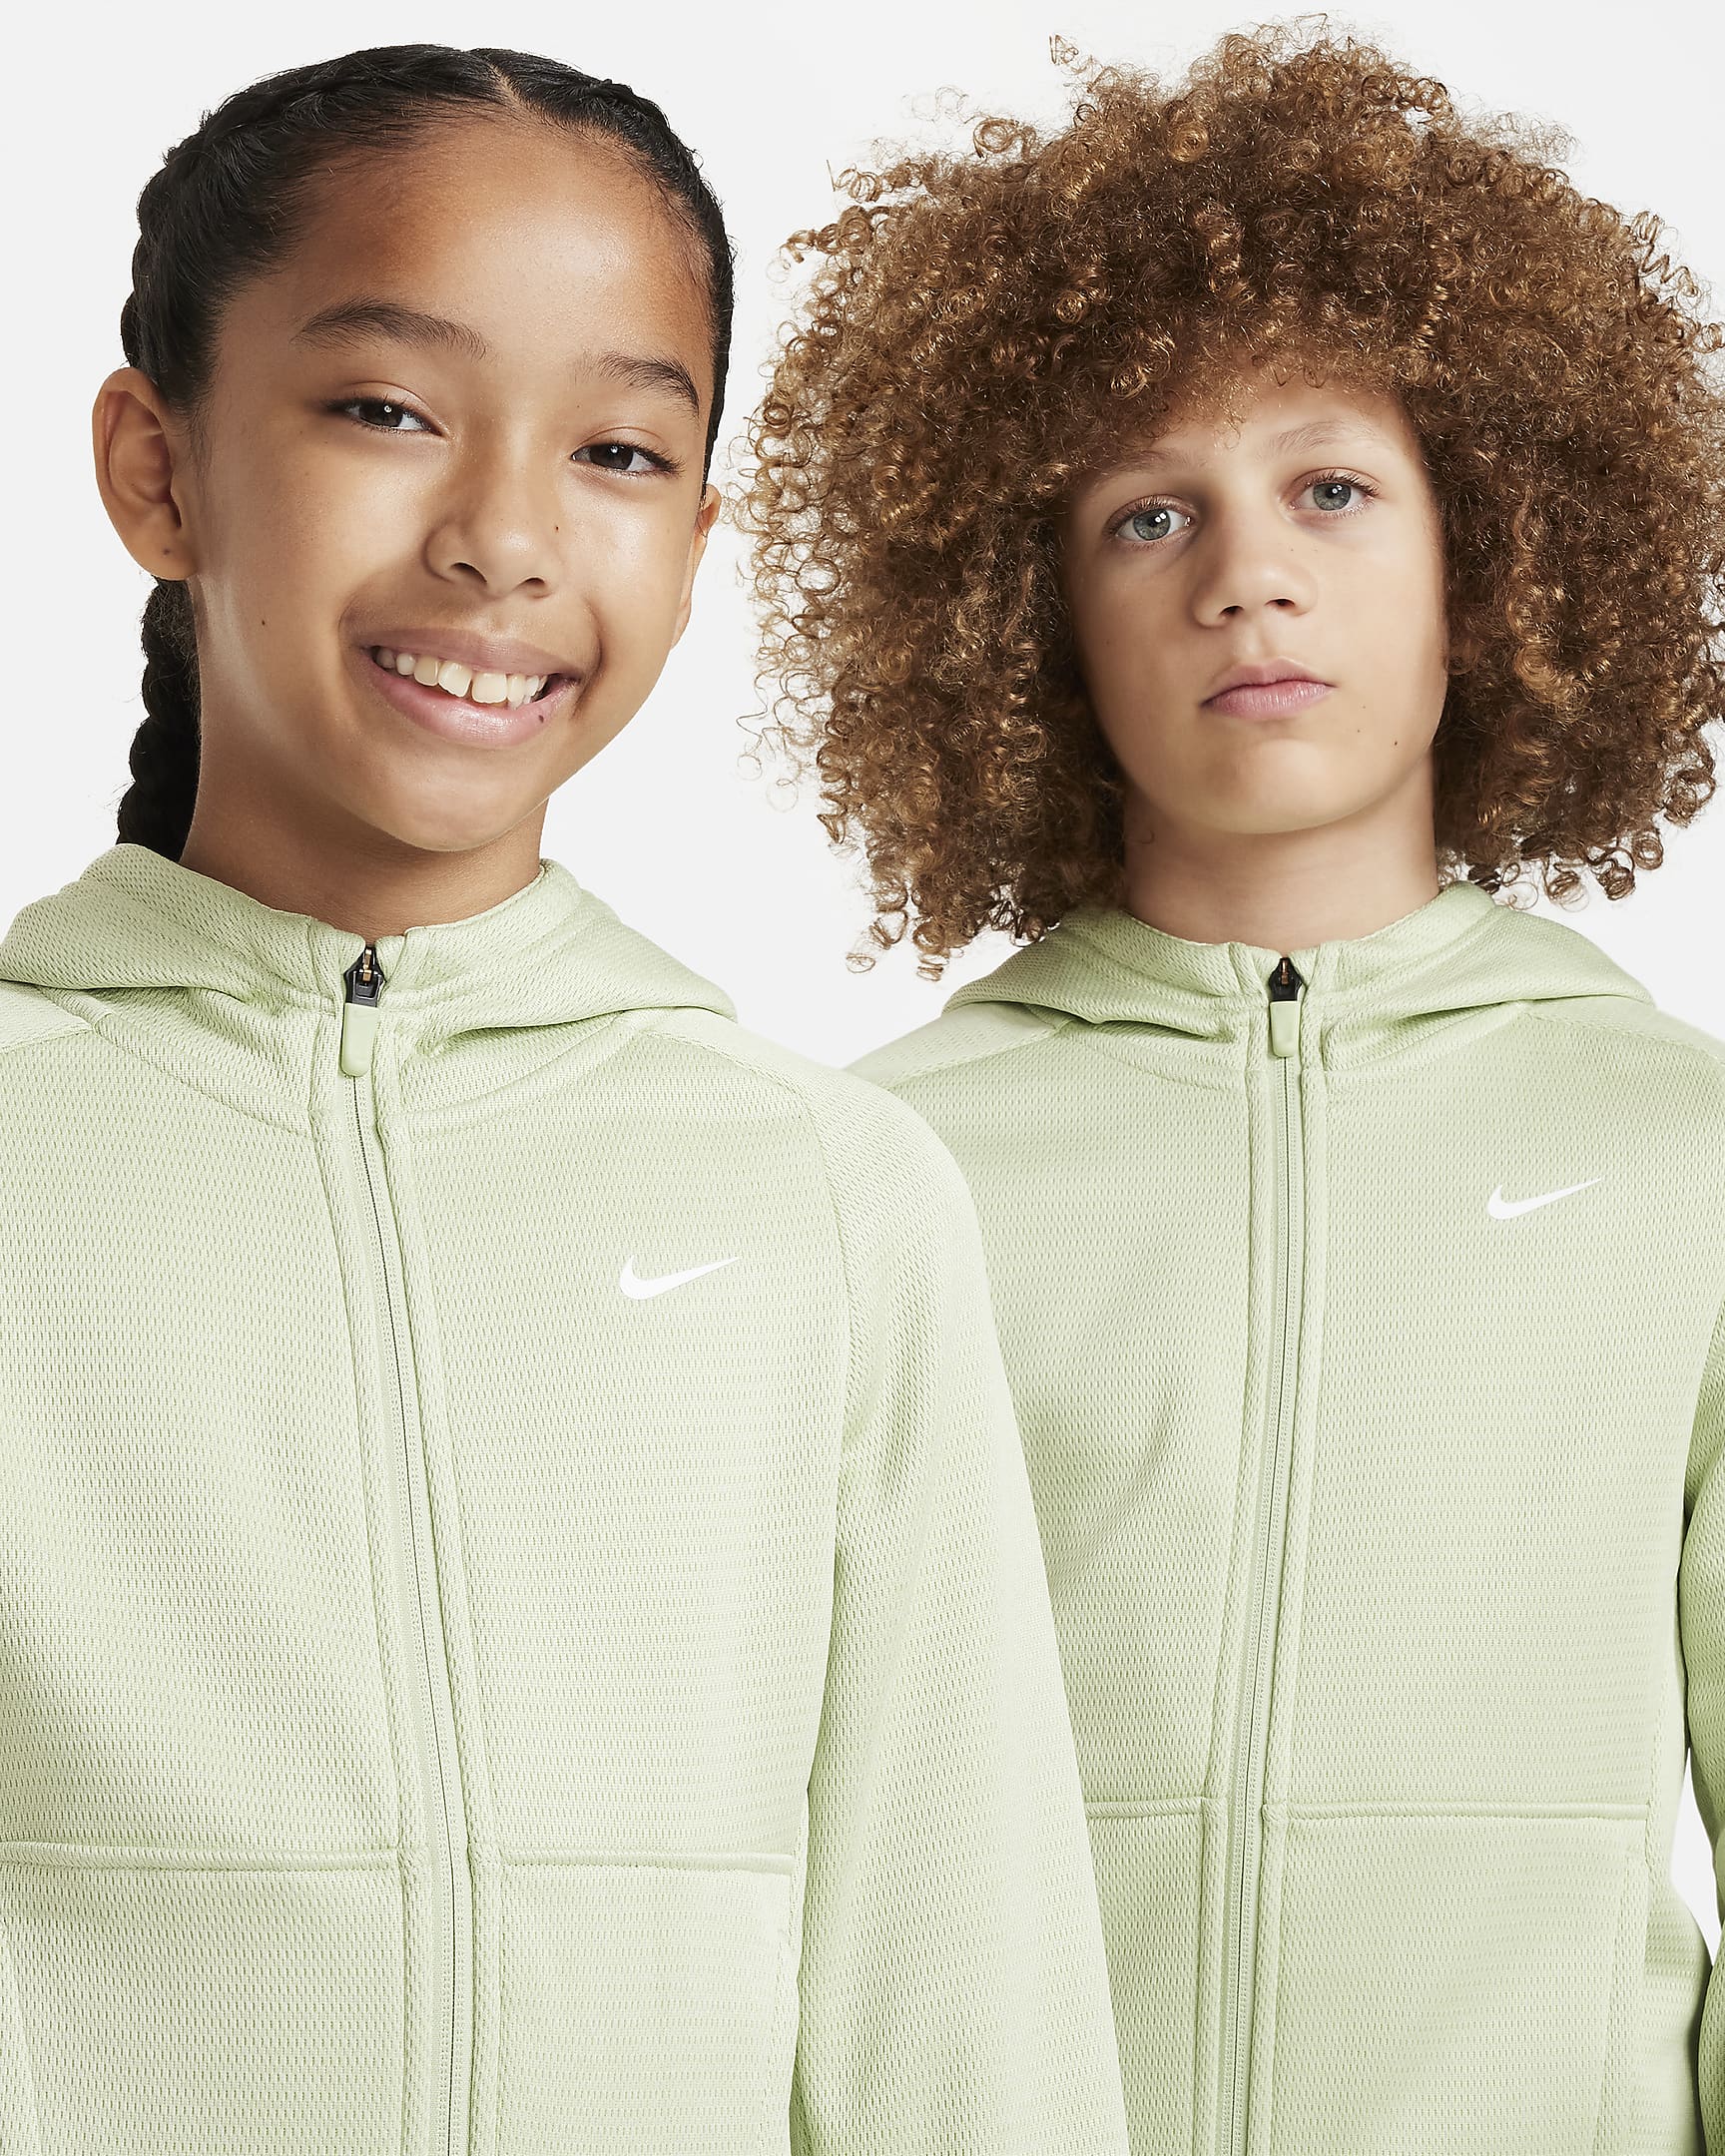 Nike Therma-FIT Big Kids' Full-Zip Hoodie. Nike.com